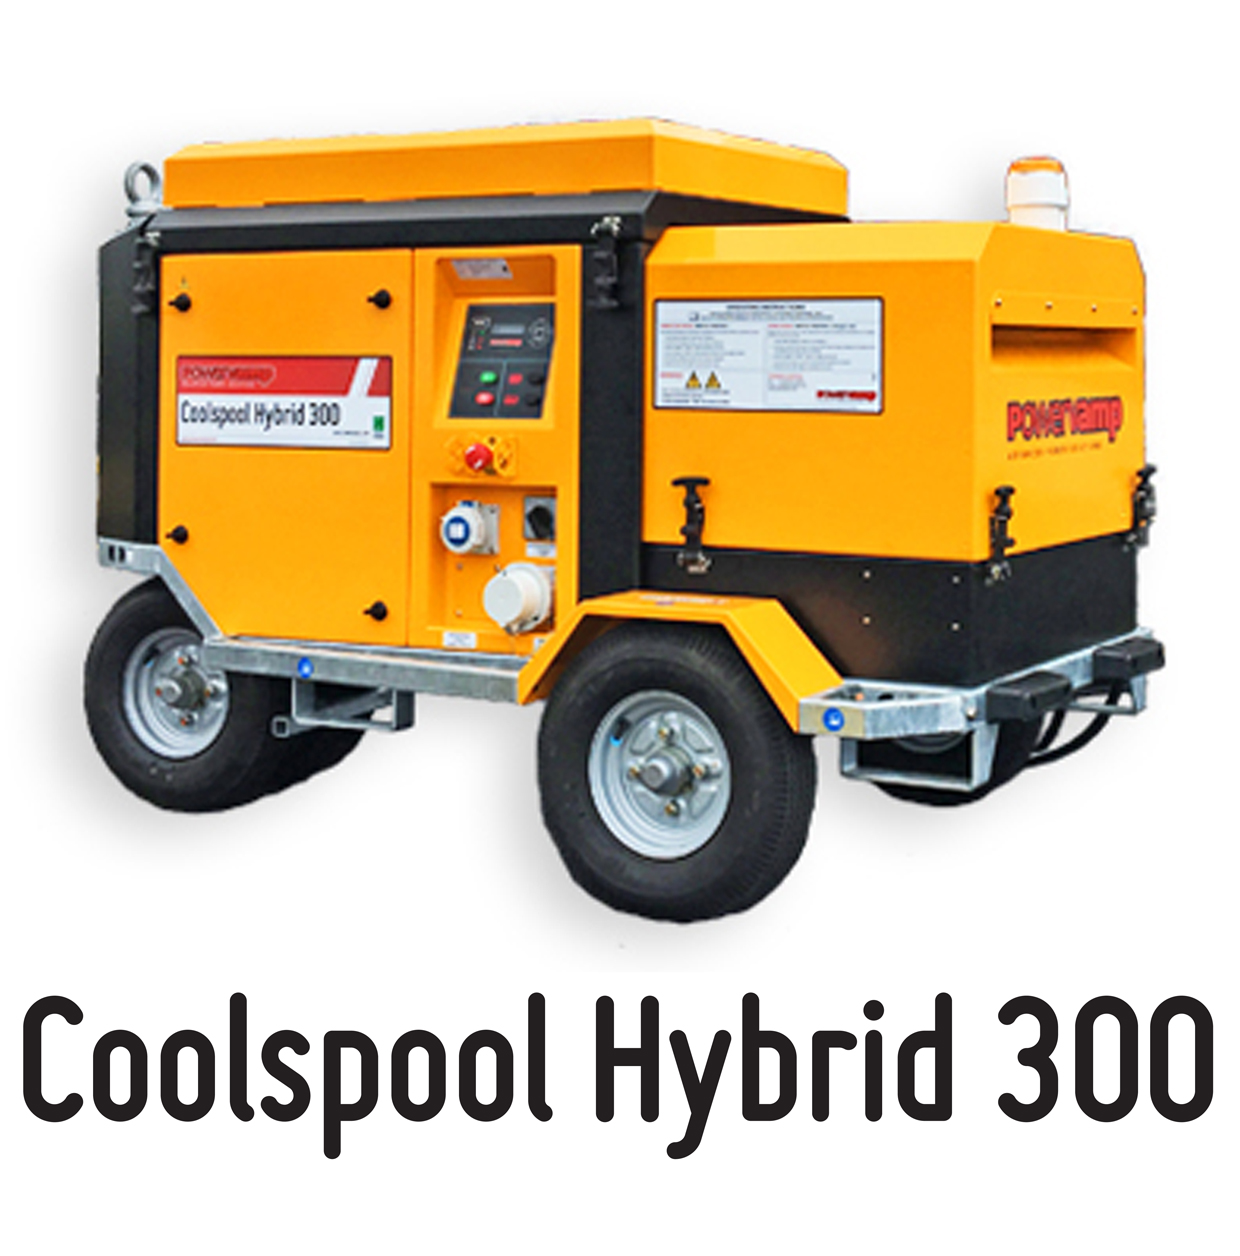 Coolspool Hybrid 300 thumbnail